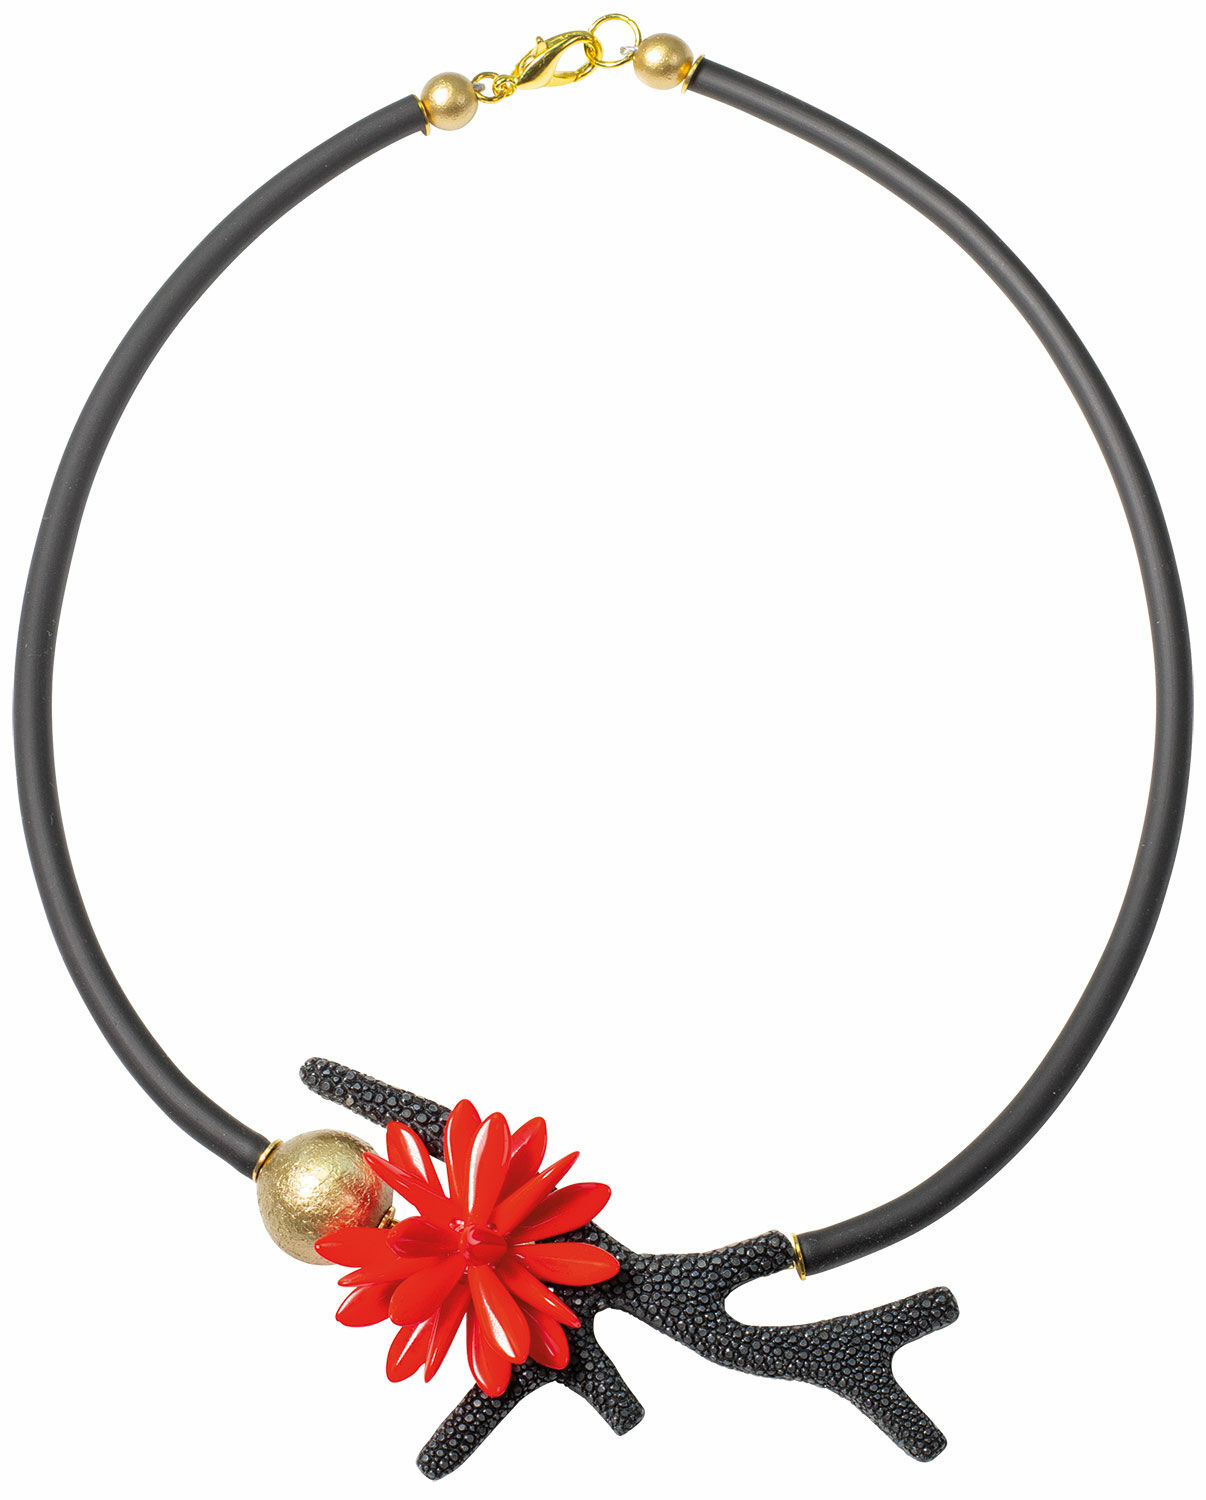 Necklace "Coralie" by Anna Mütz